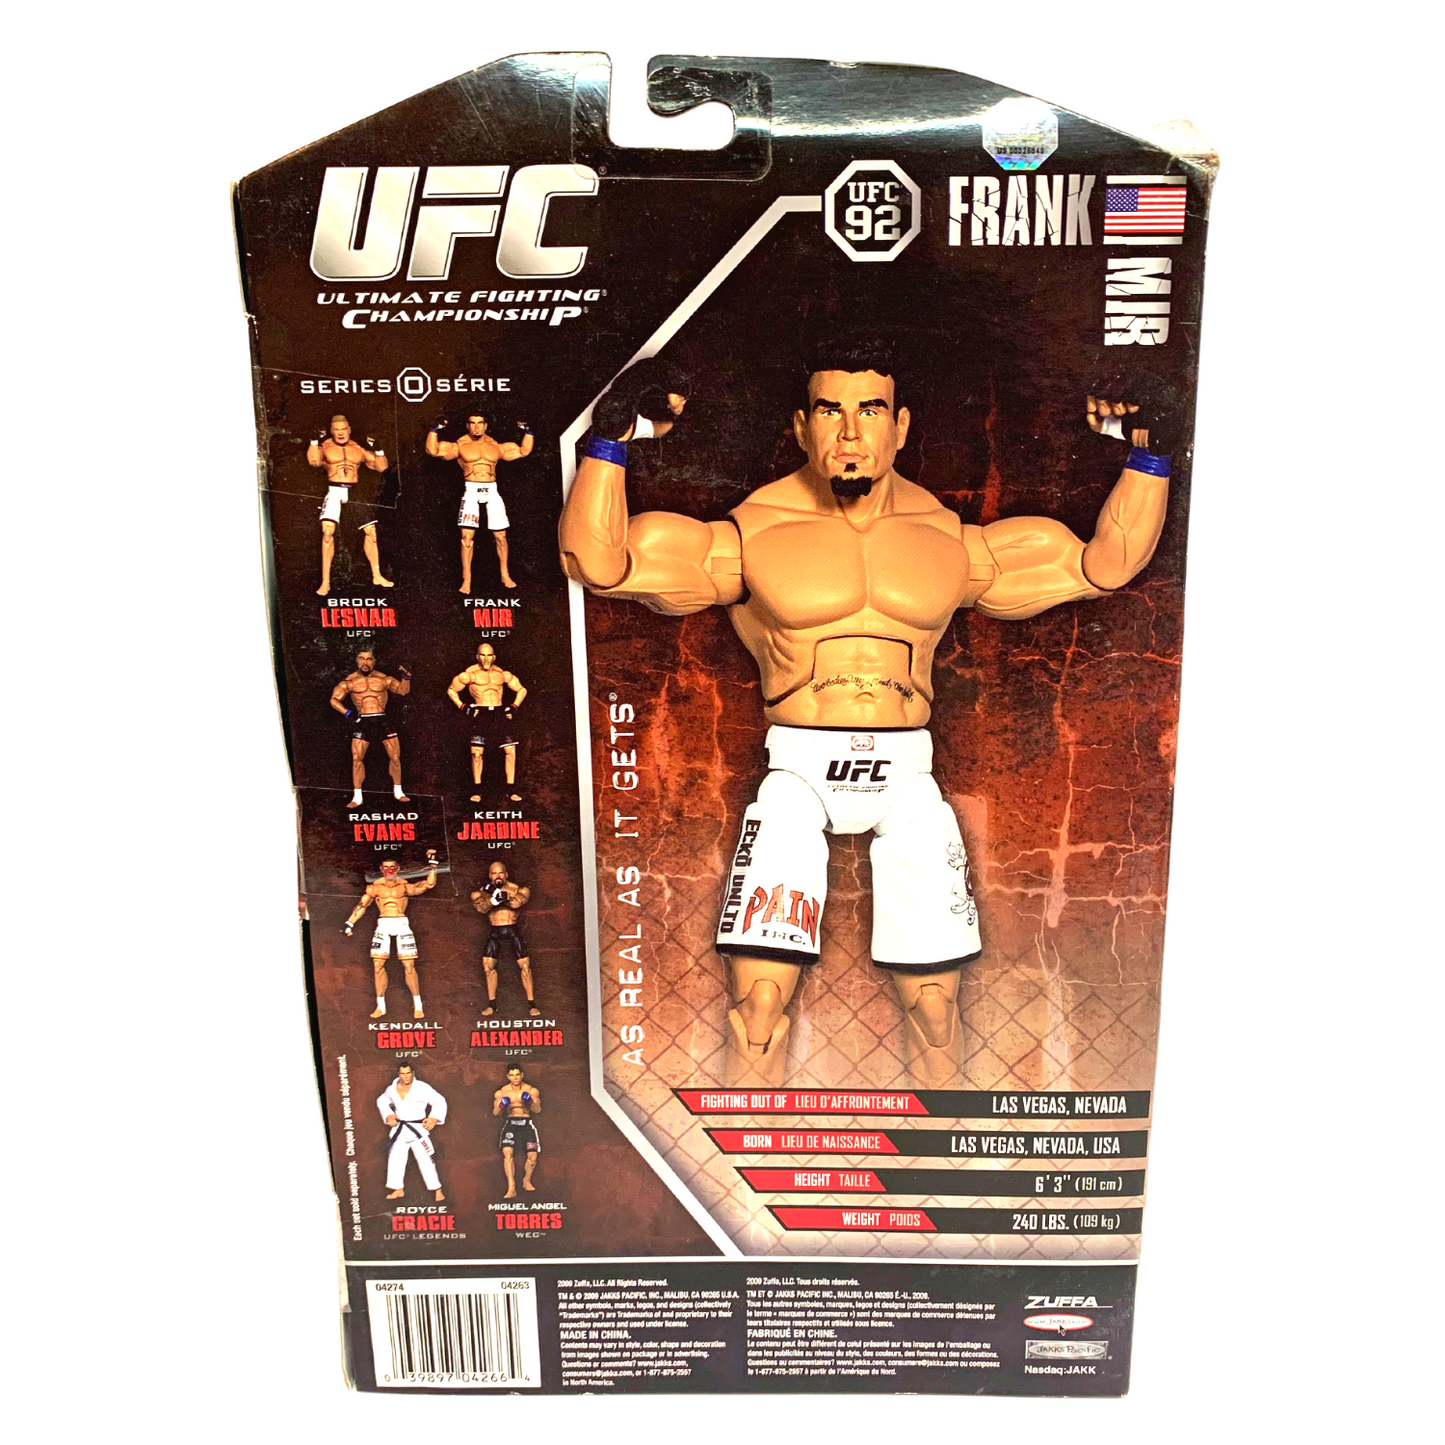 Jakks Pacific UFC Exclusive Series 0 Frank Mir Deluxe Action Figure UFC 92